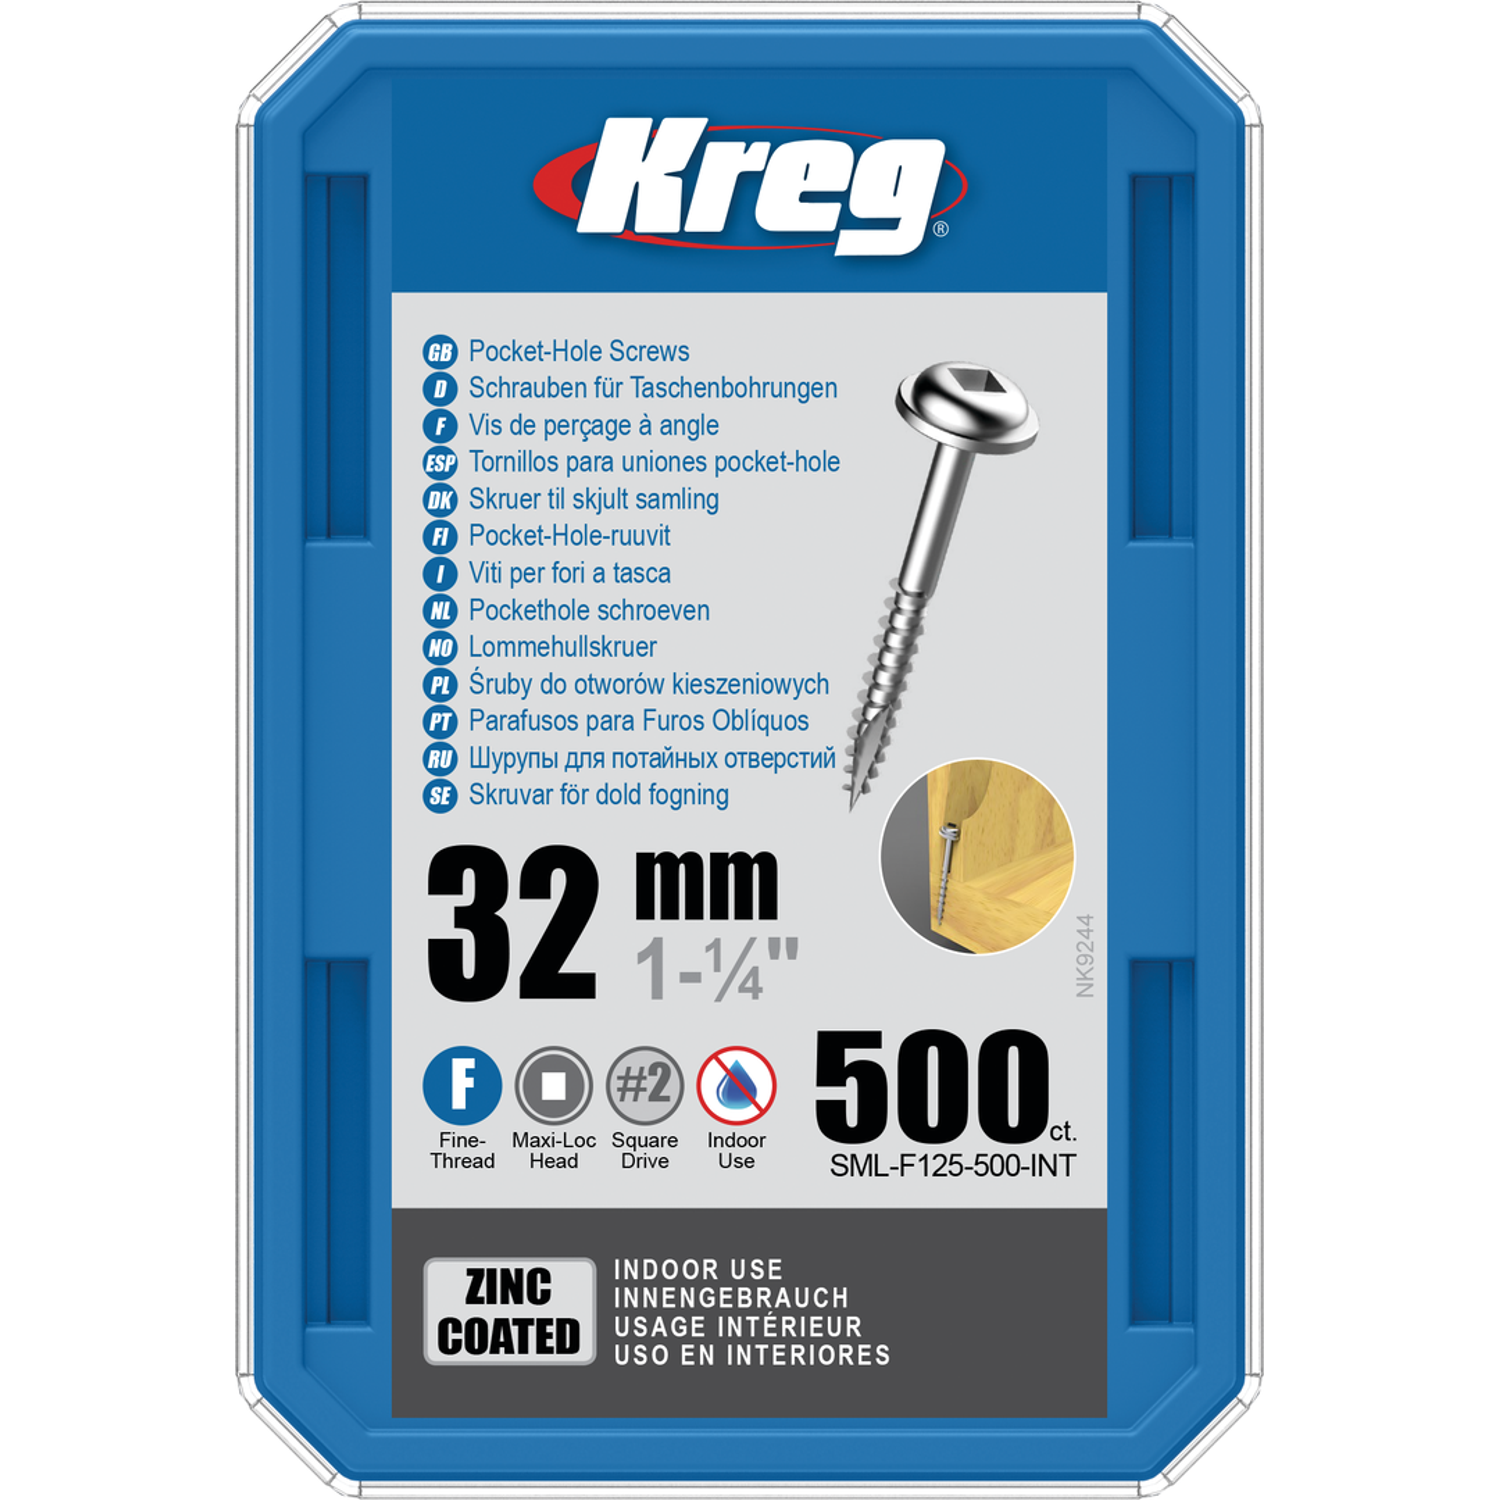 Billede af KREG Pocket-Hole skruer 32mm Zinc Coated Maxi-Loc fin gevind 500stk